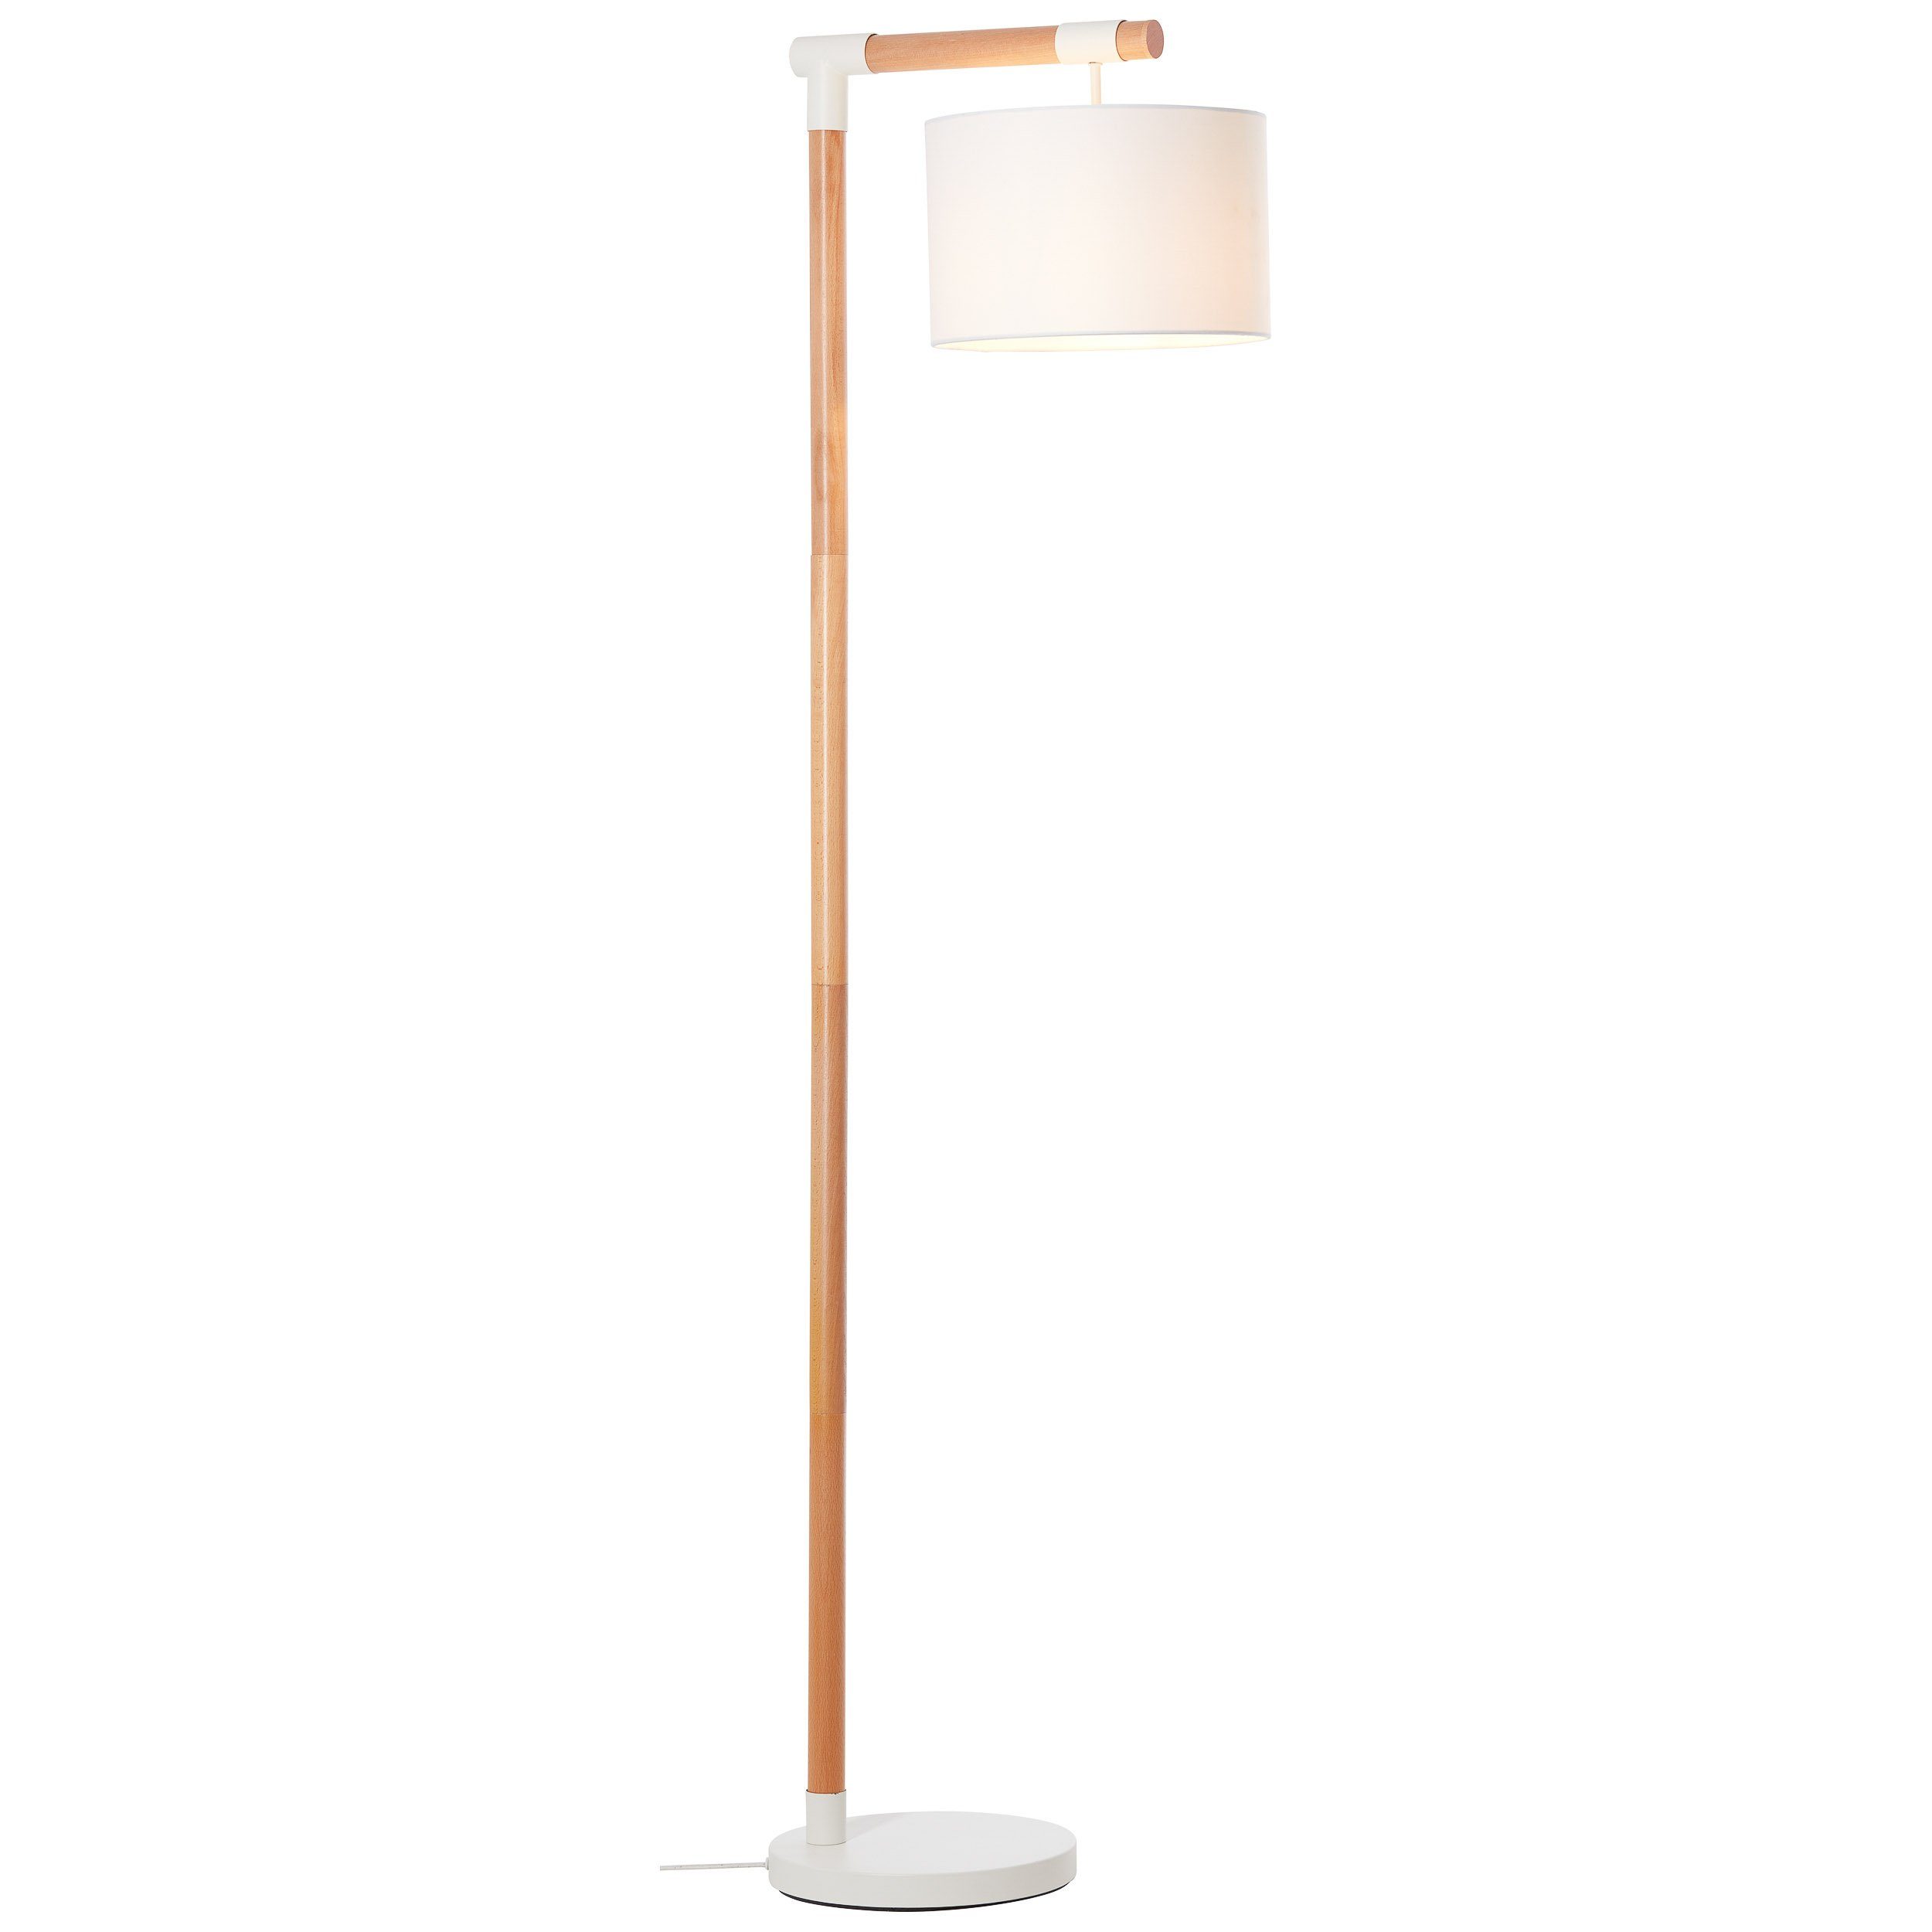 BRILLIANT lamp Eloi vloerlamp 1,68 m naturel / wit | 1x A60, E27, 60W, geschikt voor standaardlampen (niet inbegrepen) | Schaal A ++ tot E | Met voetschakelaar